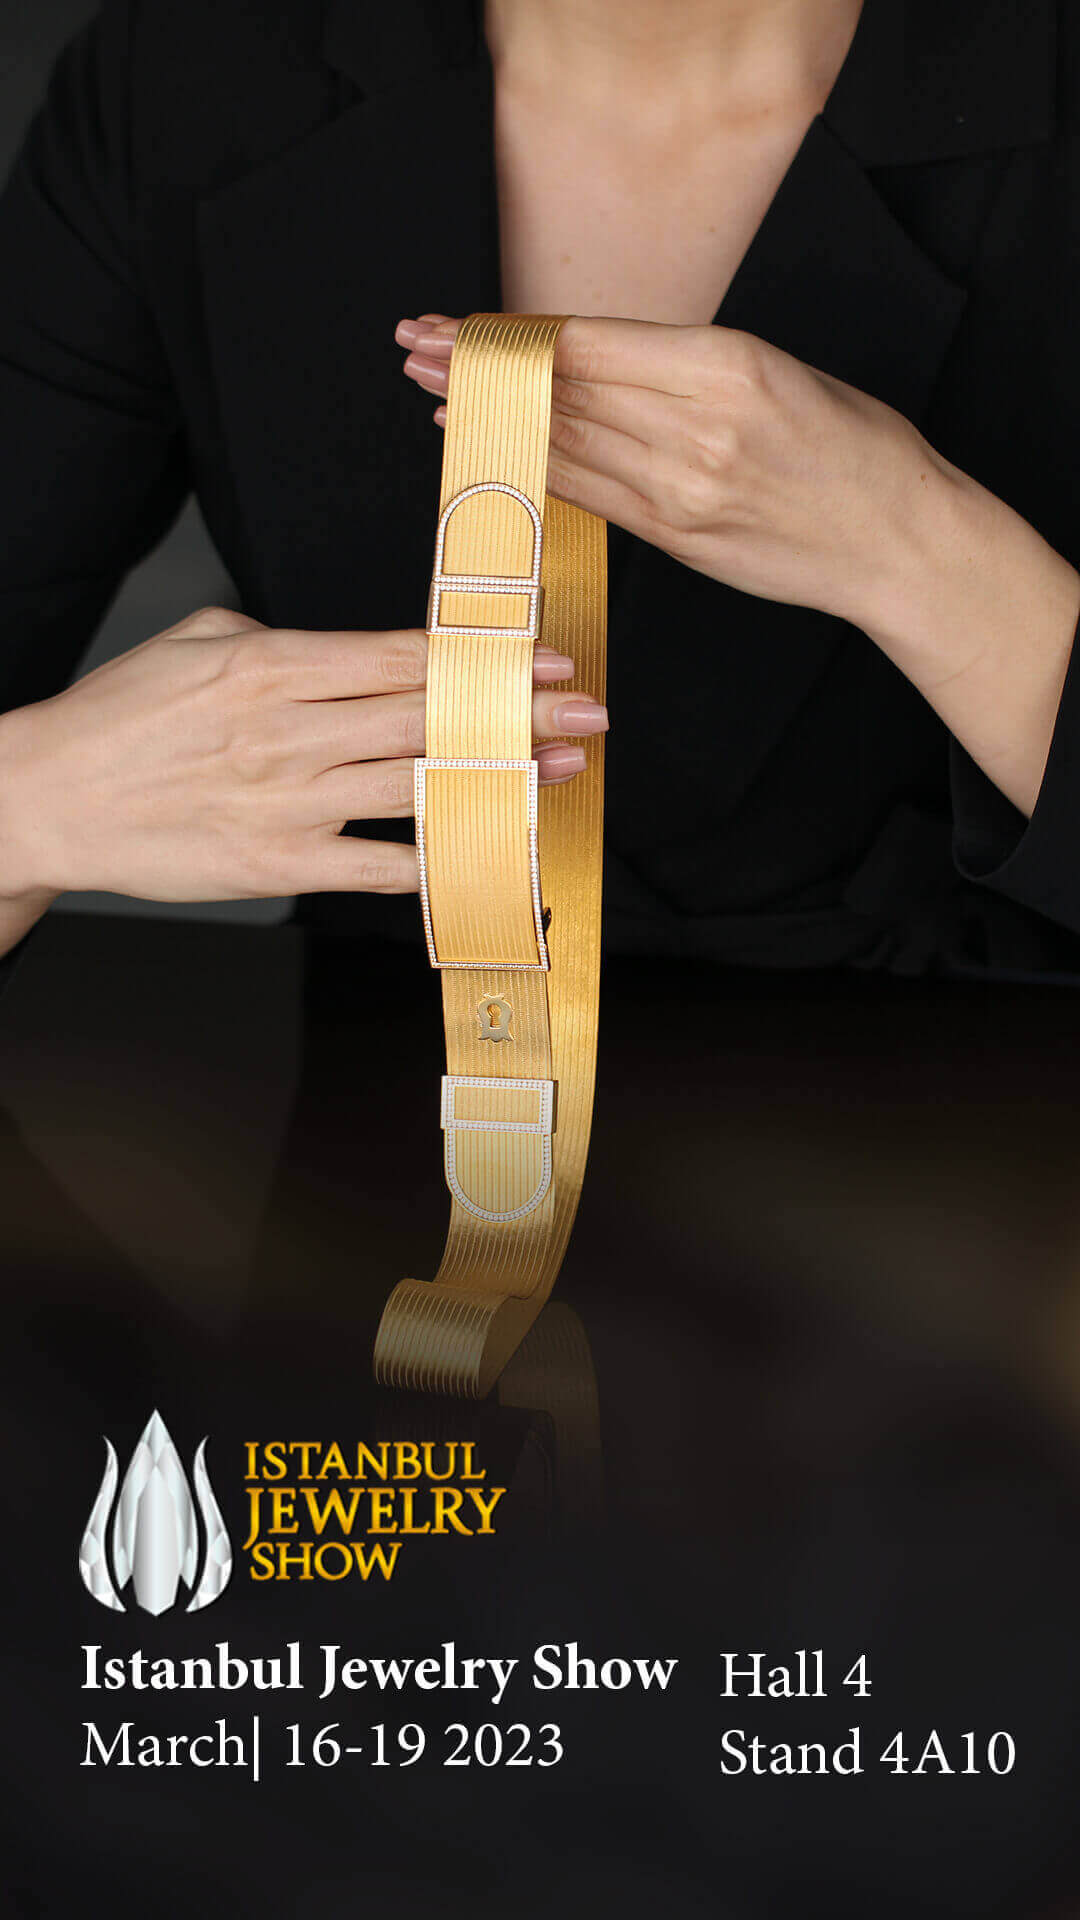 Trabzon Hasırı Geleneğini Yaşatan Elizi İstanbul Jewelry Show da